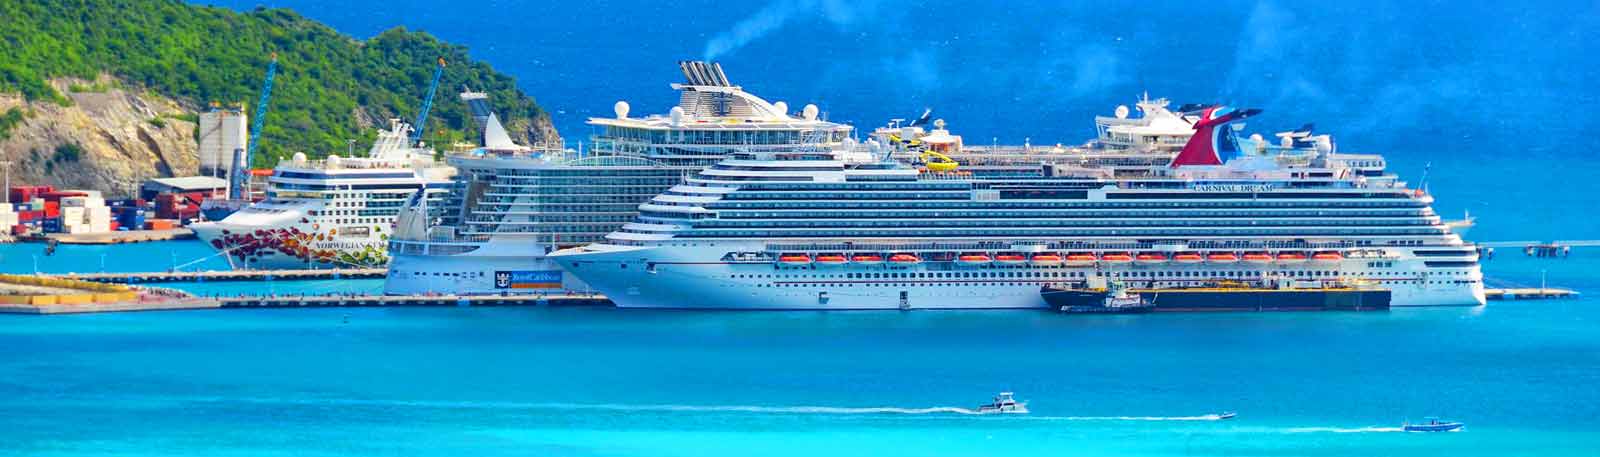 Sint Maarten / Saint Martin (Philipsburg) Cruise Port ...